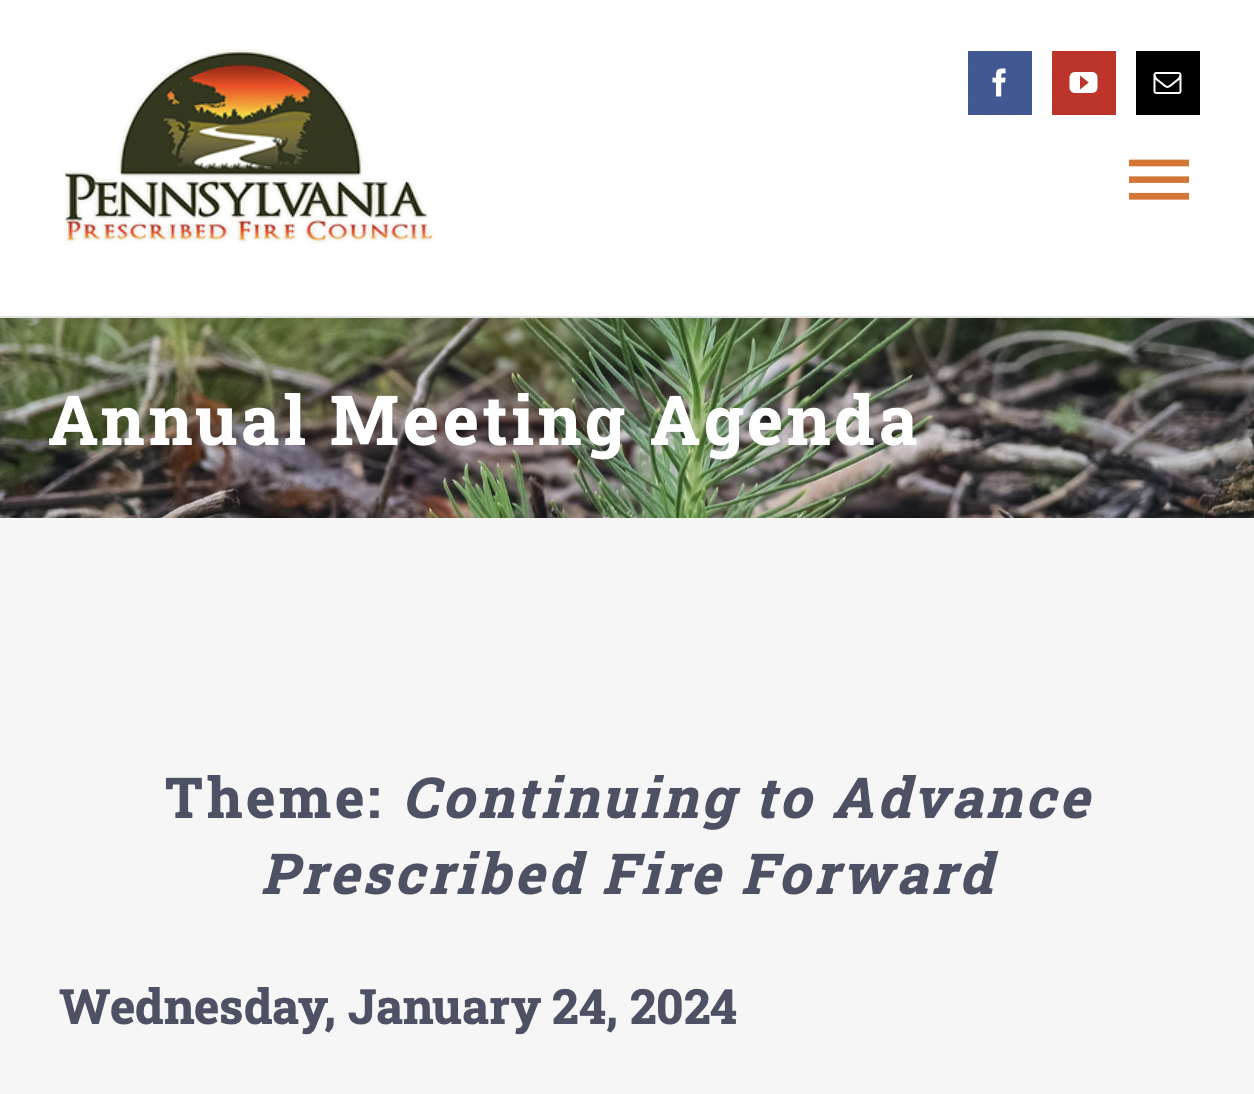 Pennsylvania Prescribed Fire Council